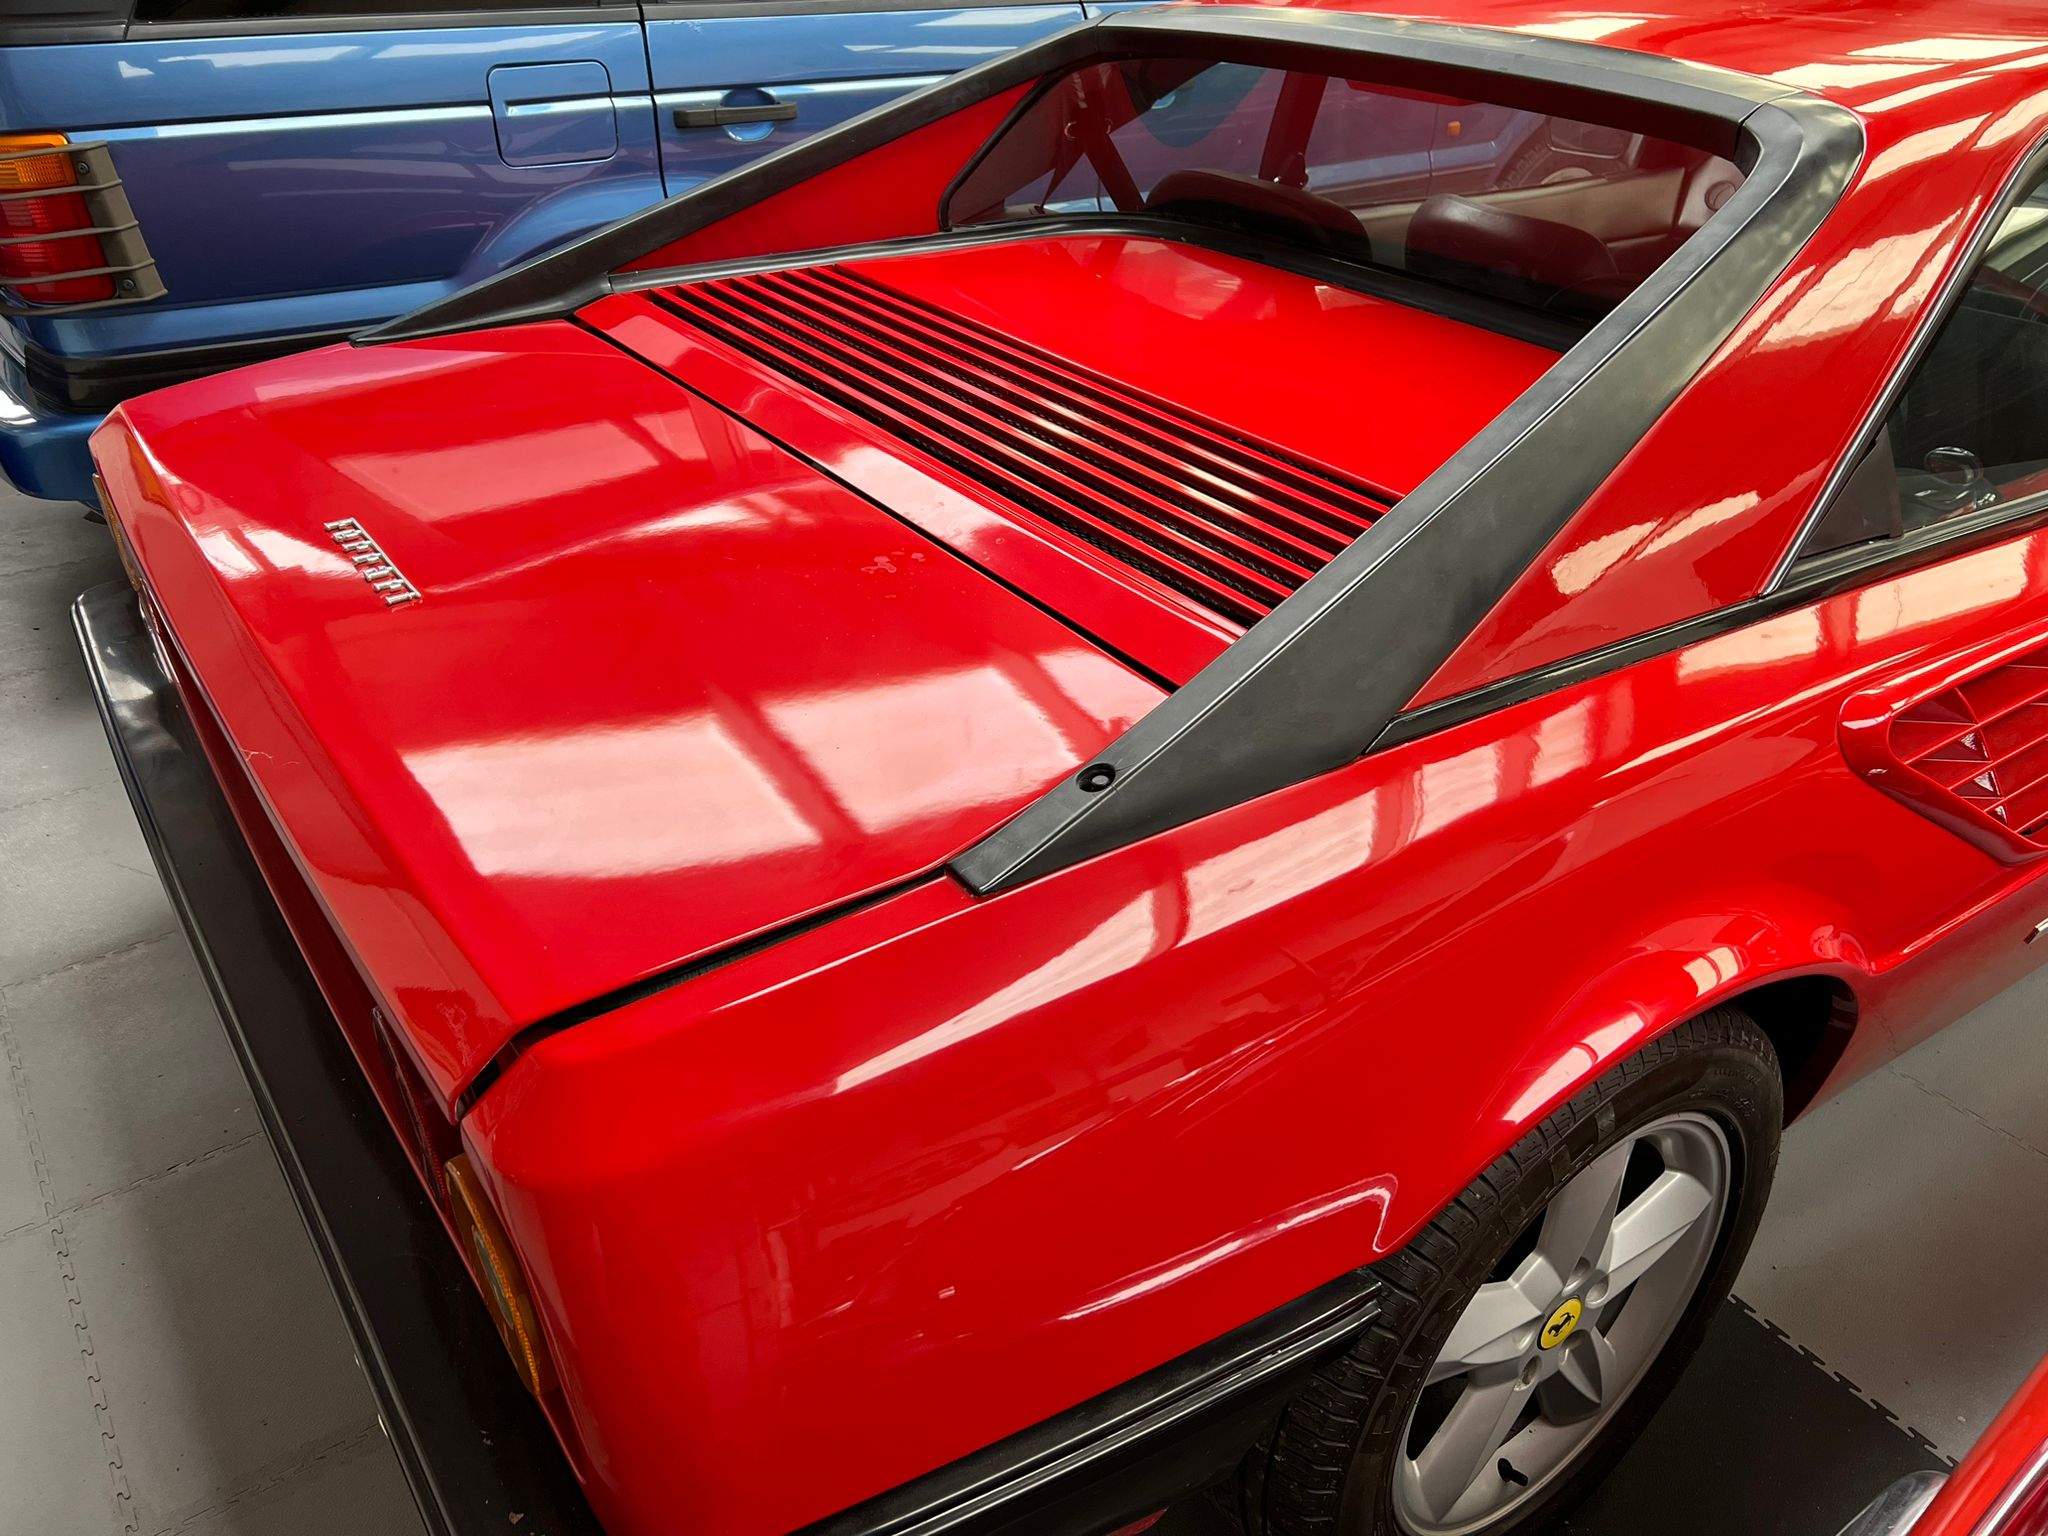 Ferrari Mondial Quattrovalvole Coupe 1984 - Image 7 of 22